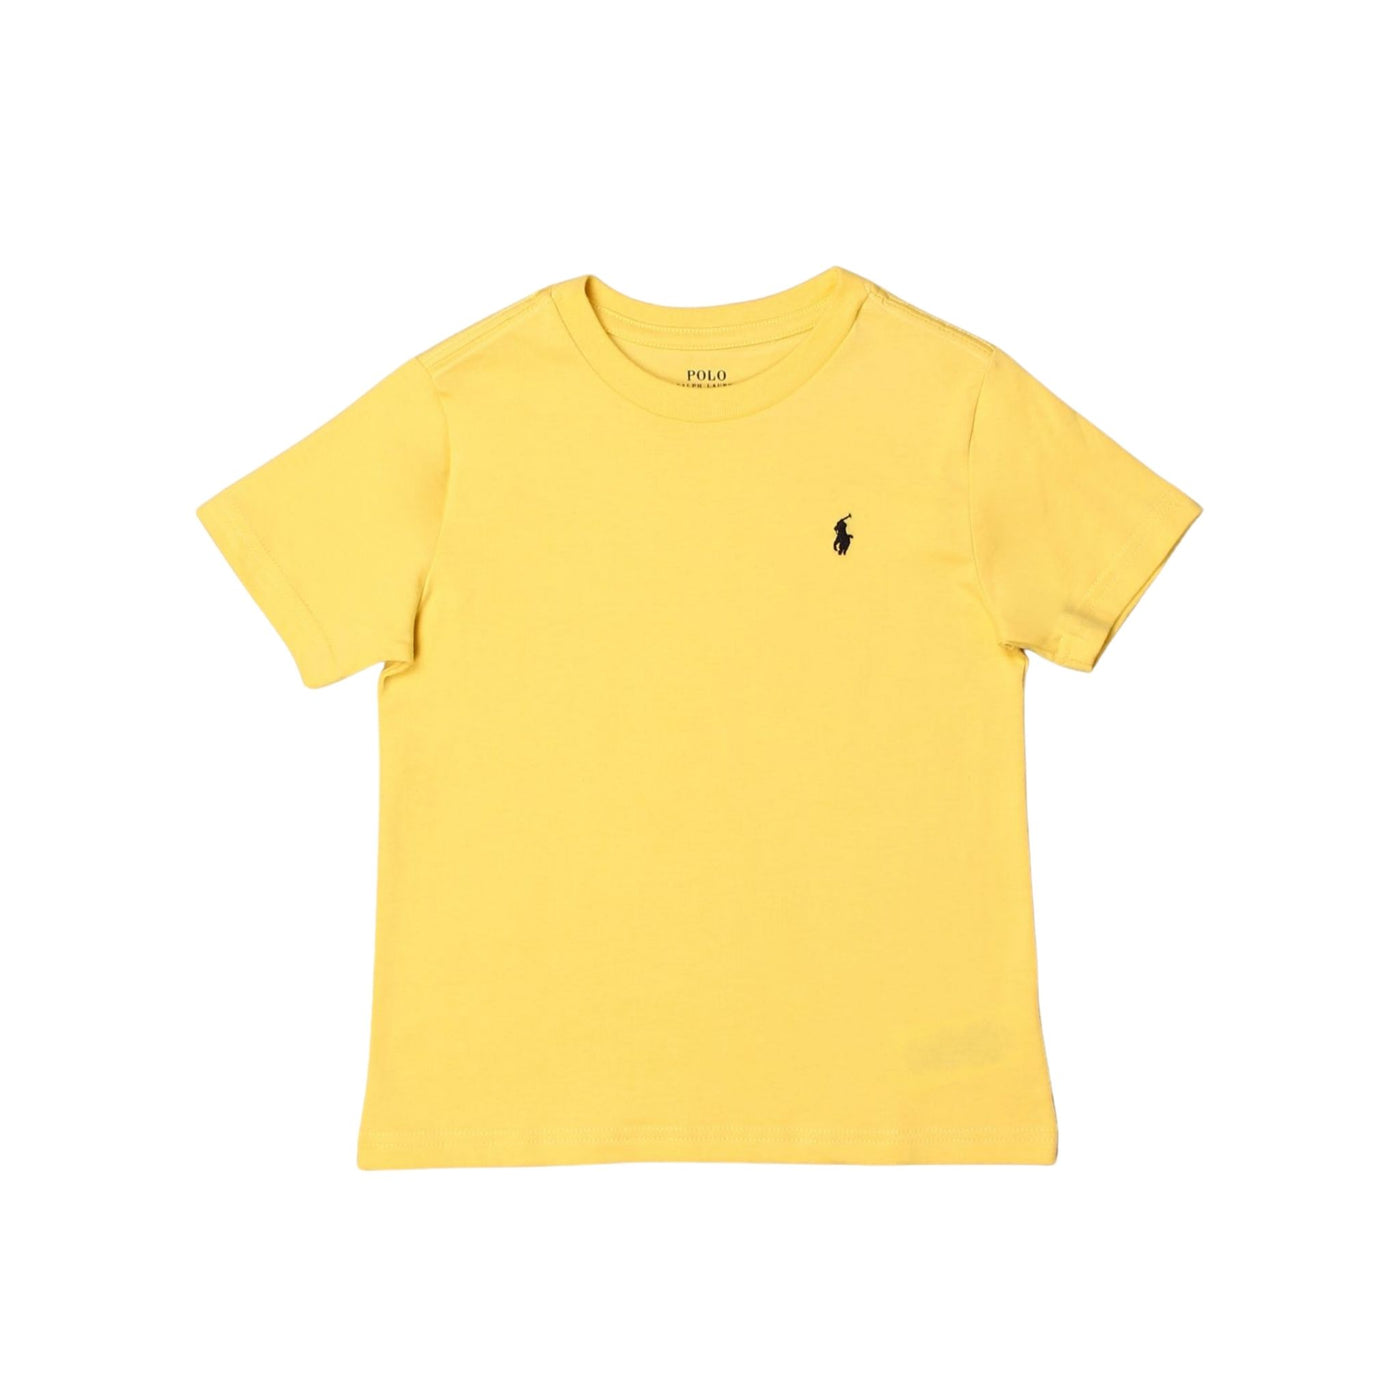 T-shirt bambino gialla firmata Polo Ralph Lauren vista frontale